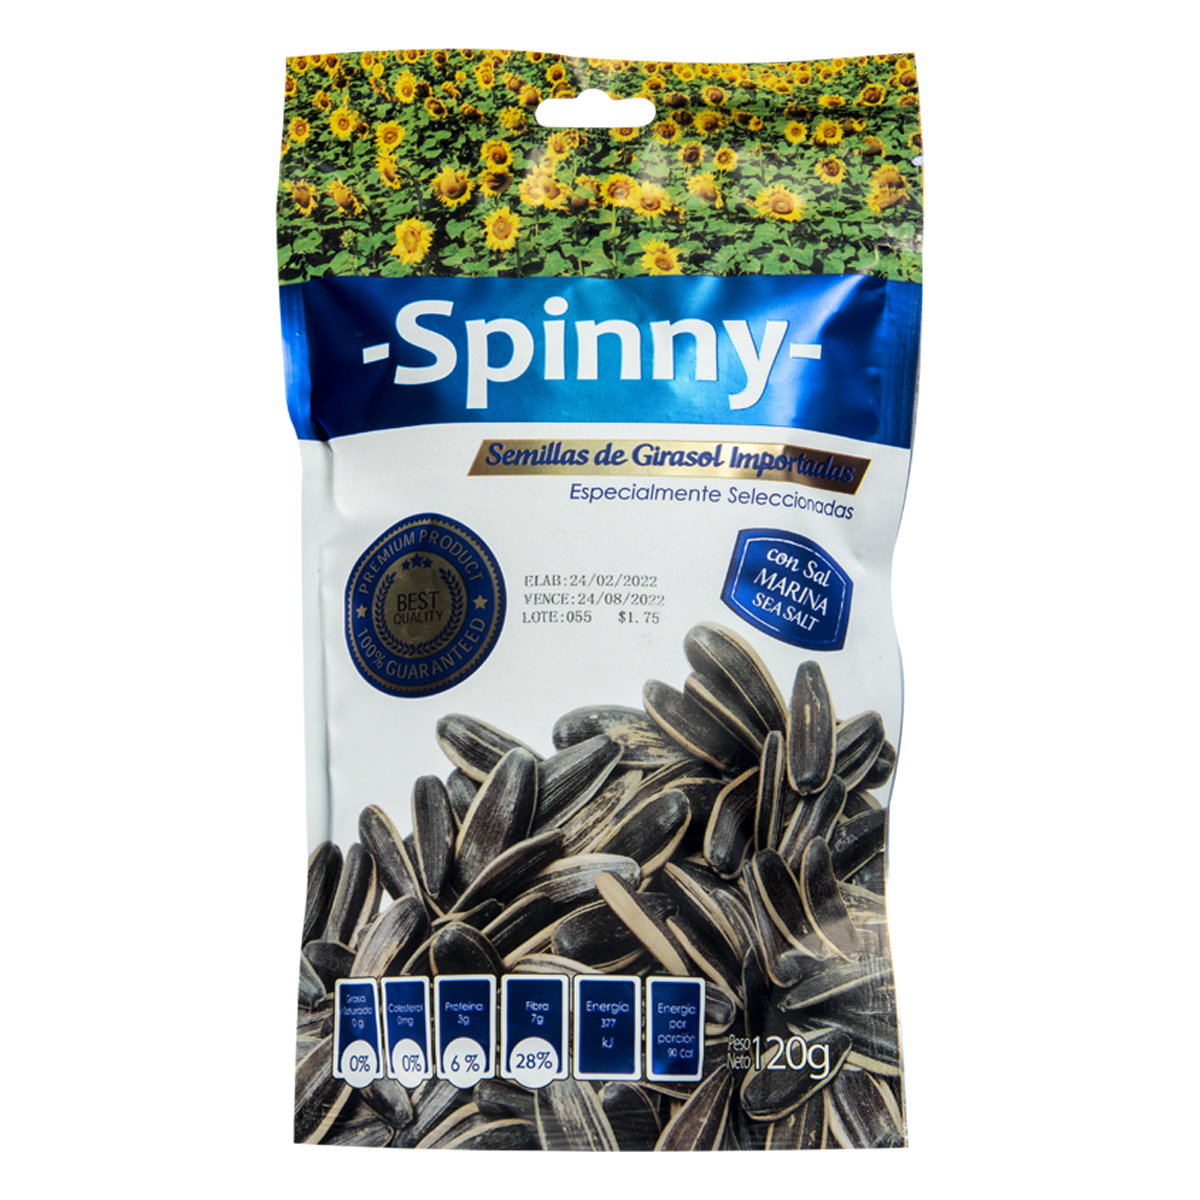 Semillas de Girasol Spinny Natural con Sal Marina - 950514